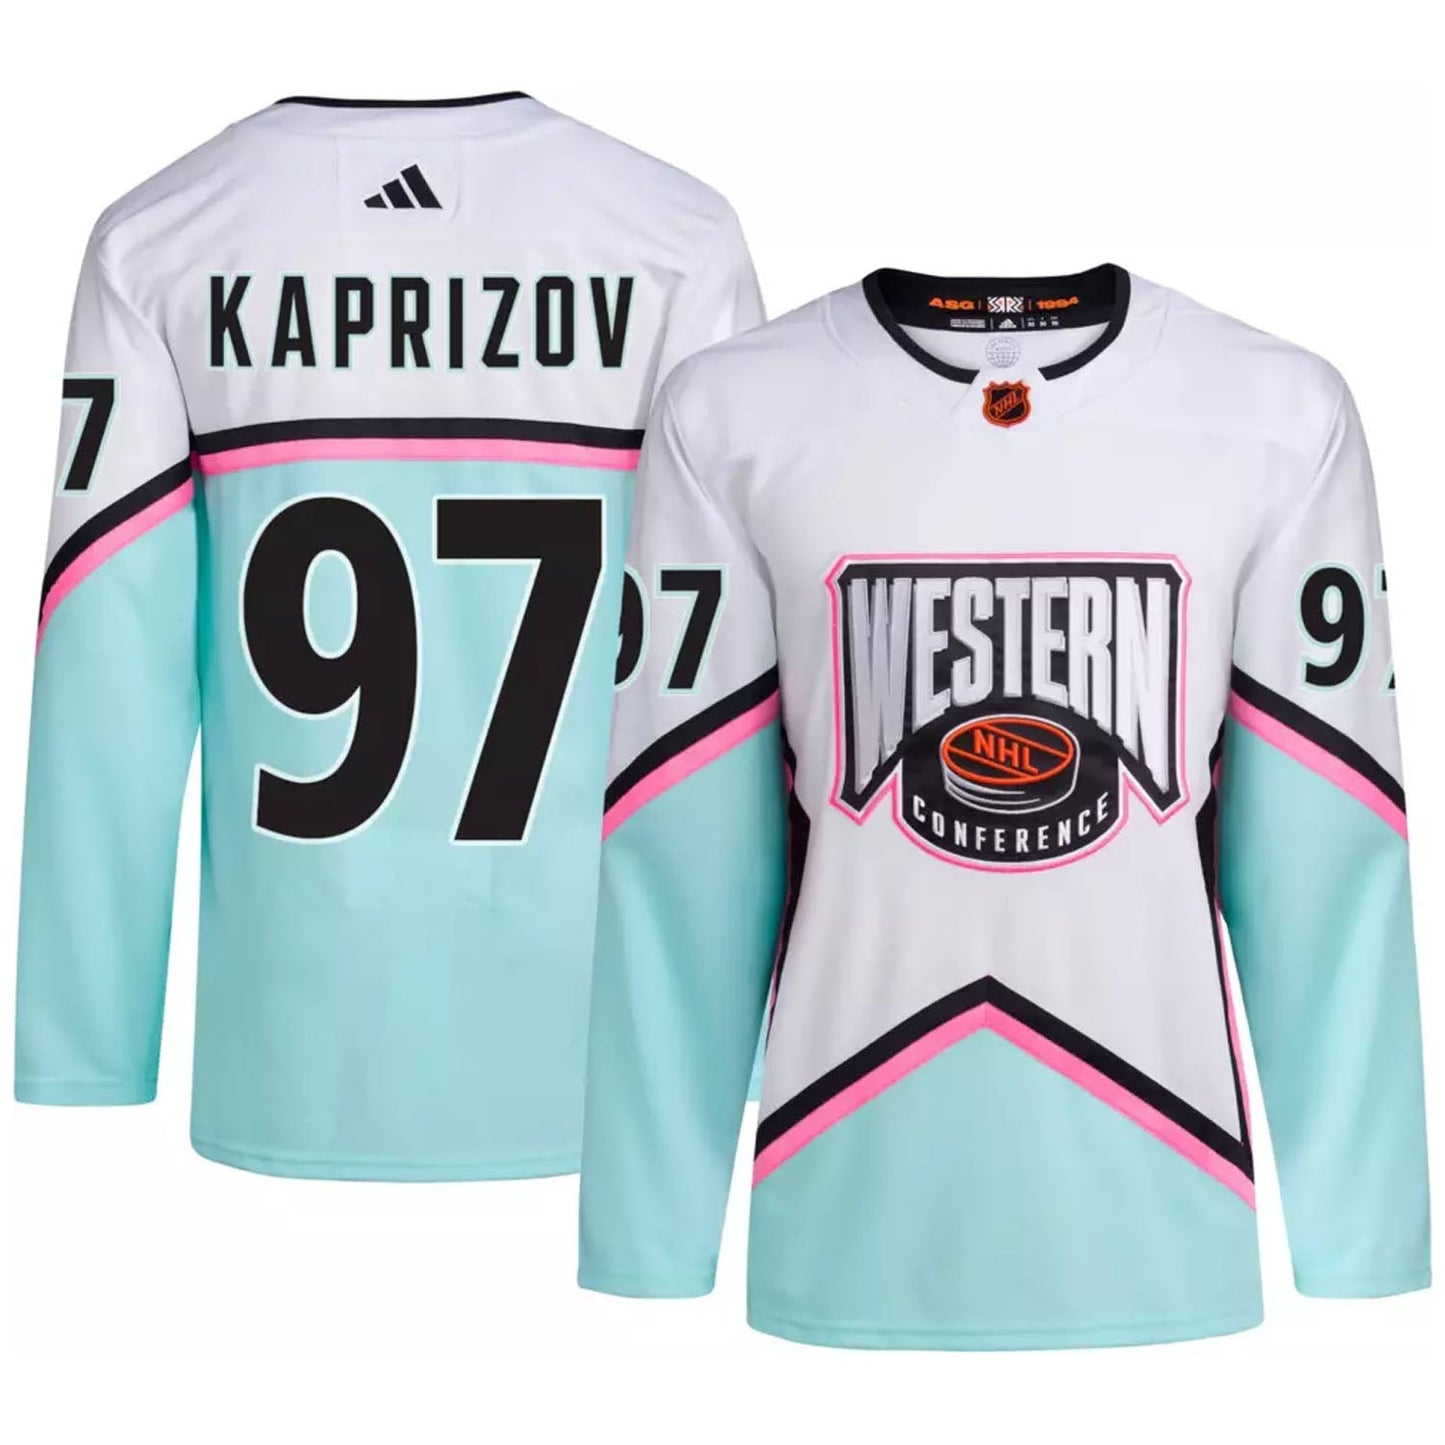 NHL Kirill Kaprizov Western All Star 97 Jersey